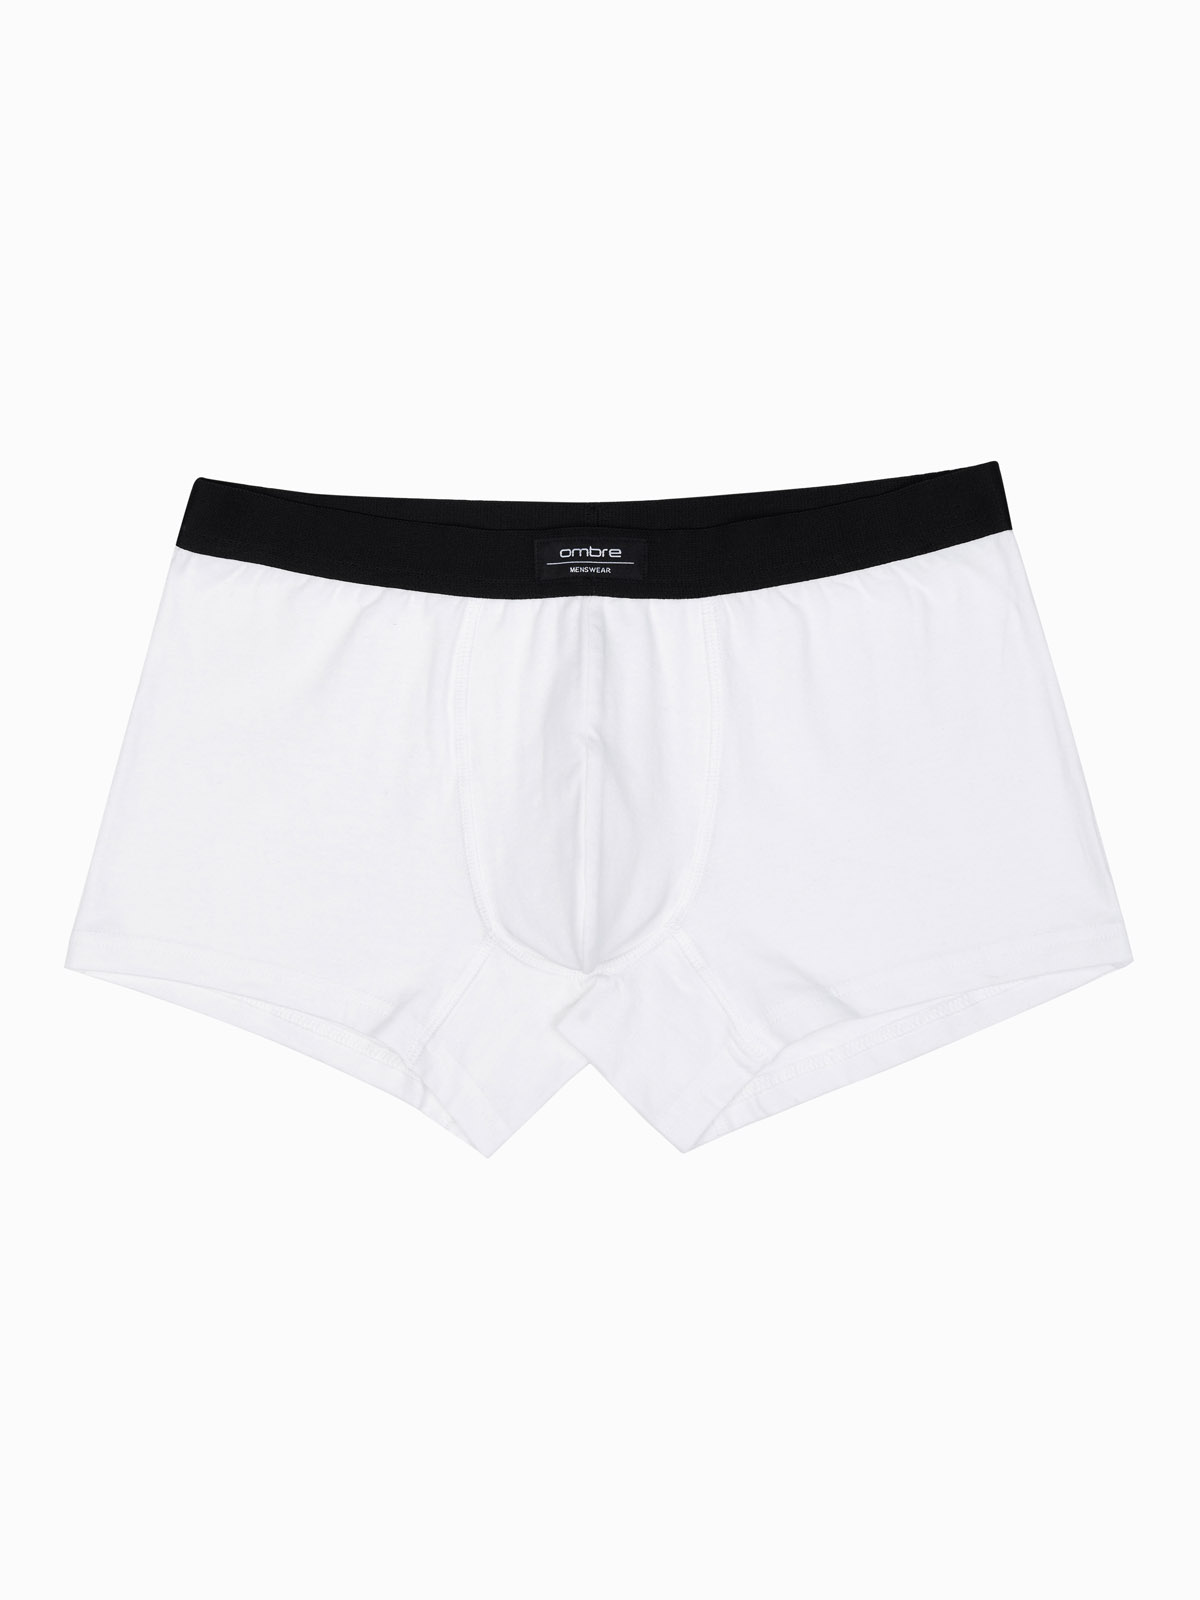 Men's underpants - white U286 | Ombre.com - Men's clothing online